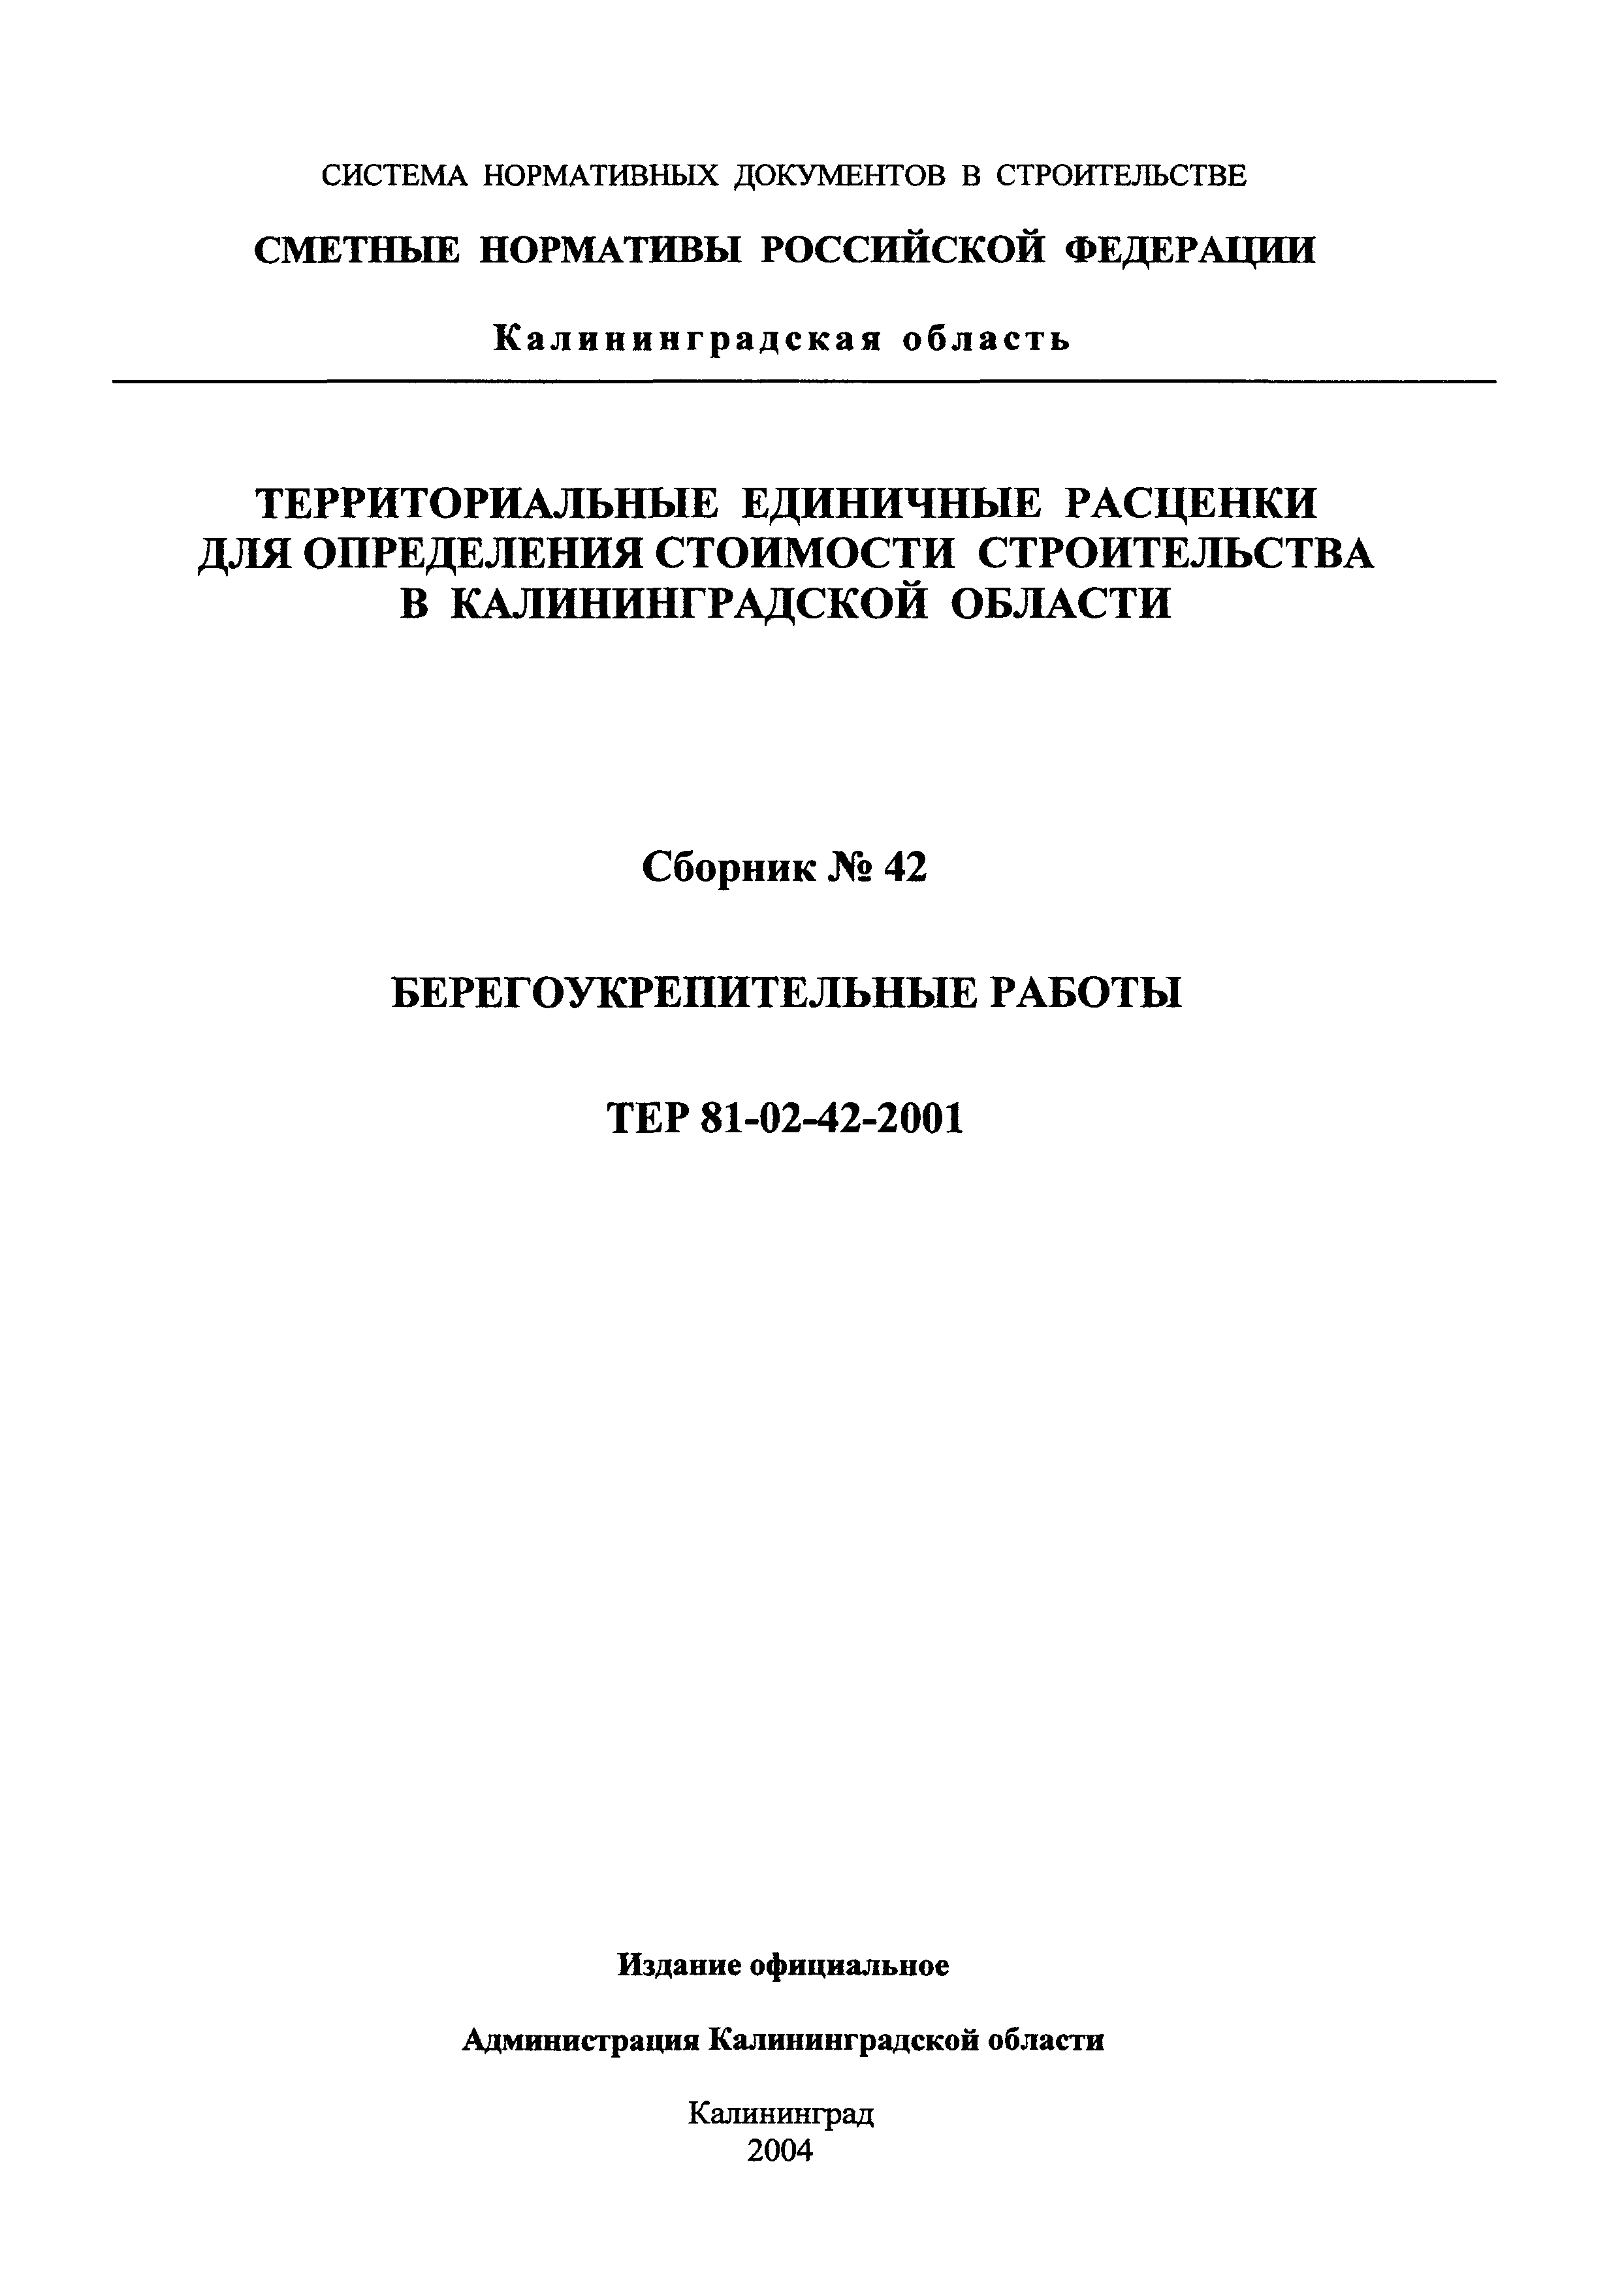 ТЕР Калининградской области 2001-42